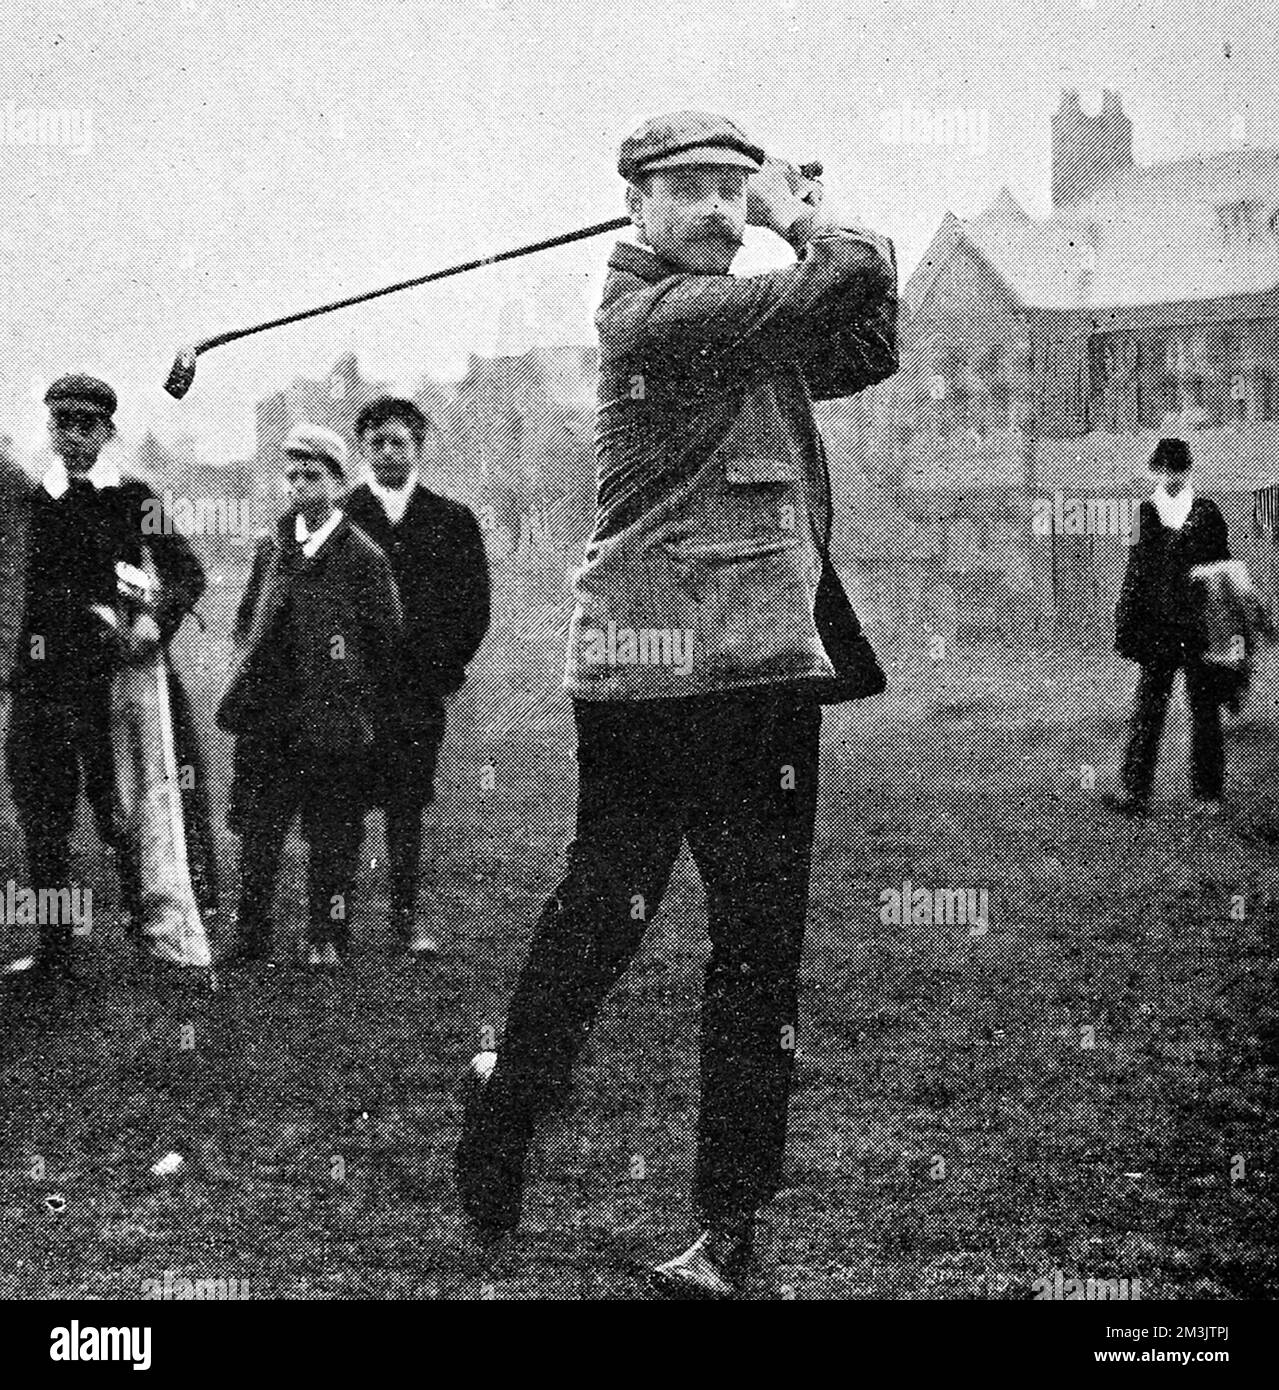 Fotografía de James Robb, ganador del Campeonato de Golf Amateur en Hoylake, mayo de 1906. Sr. Robb, de Prestwick, St Nicholas, venció al Sr. C.C. Lingen, de Sunningdale, por 4 y 3 a pesar de fuertes vientos y lluvia durante su empate. Fecha: 1906 Foto de stock